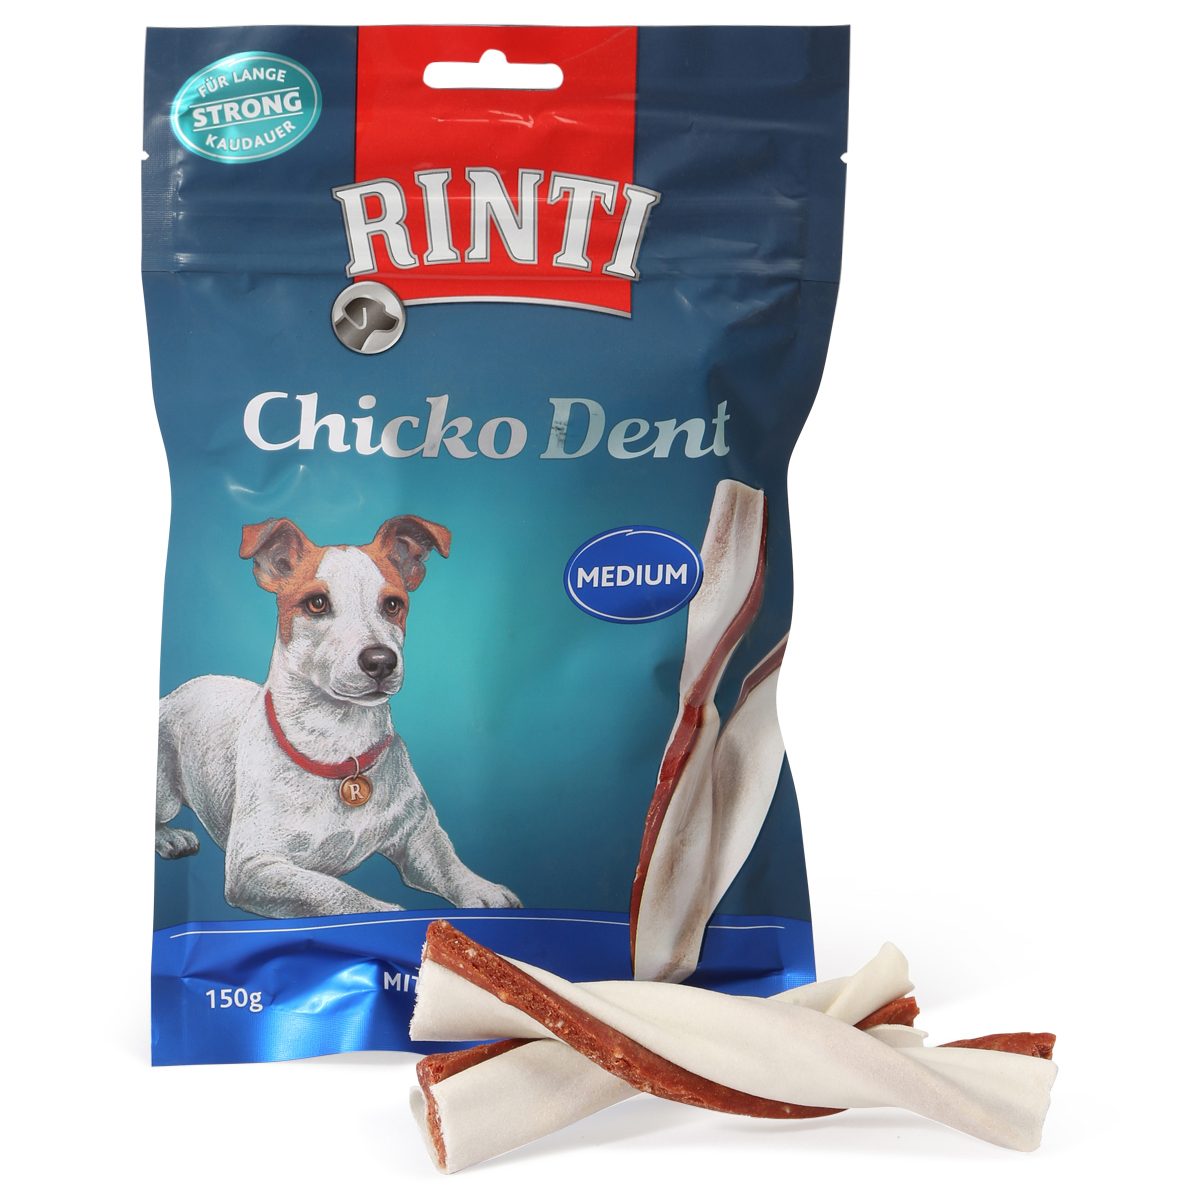 Rinti Chicko Dent Medium s kachními filety